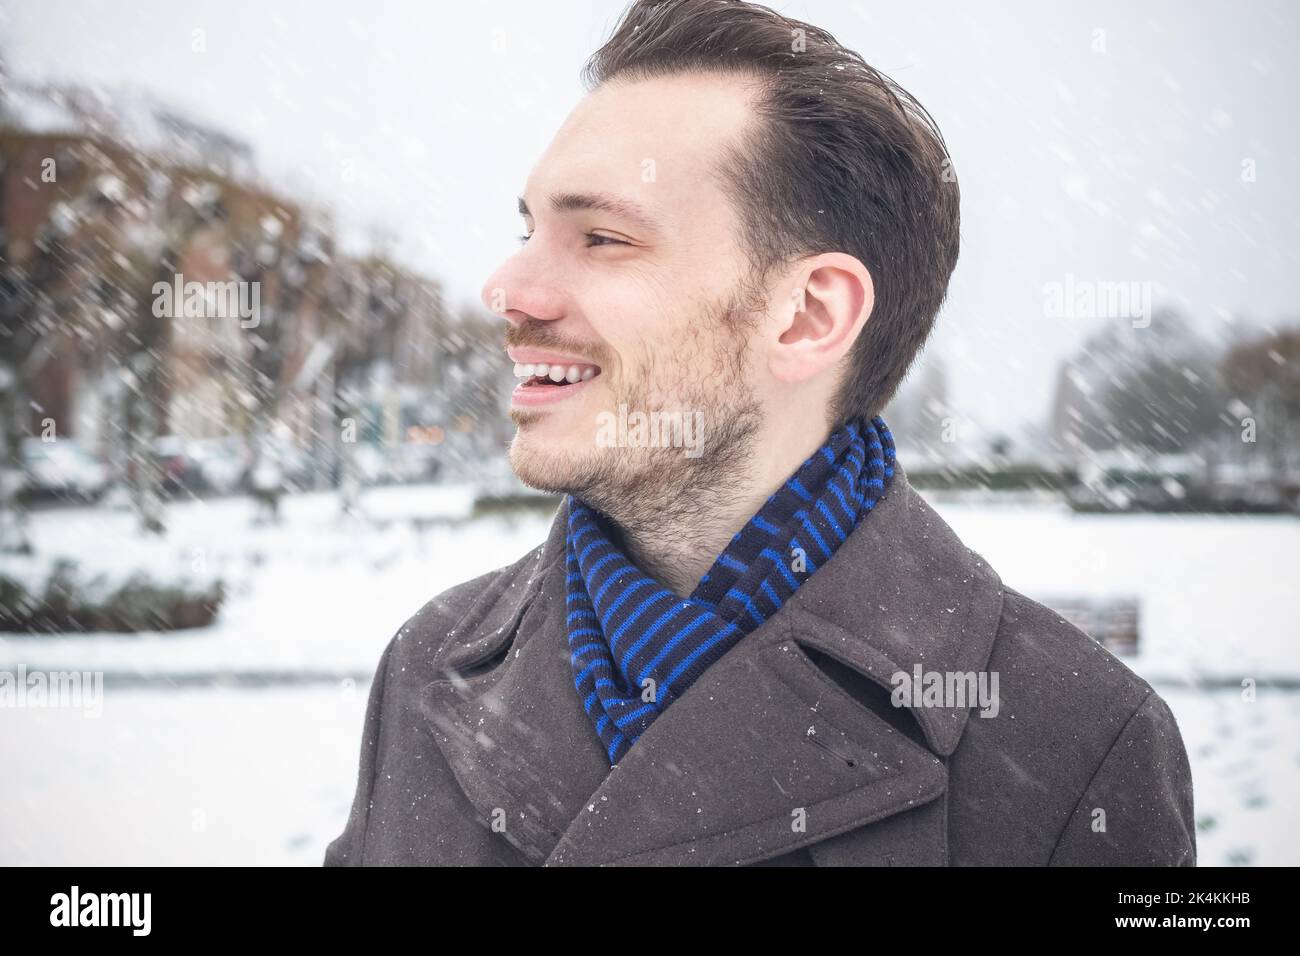 Portrait d'un jeune homme beau avec une barbe souriante en riant dans la neige d'hiver Banque D'Images